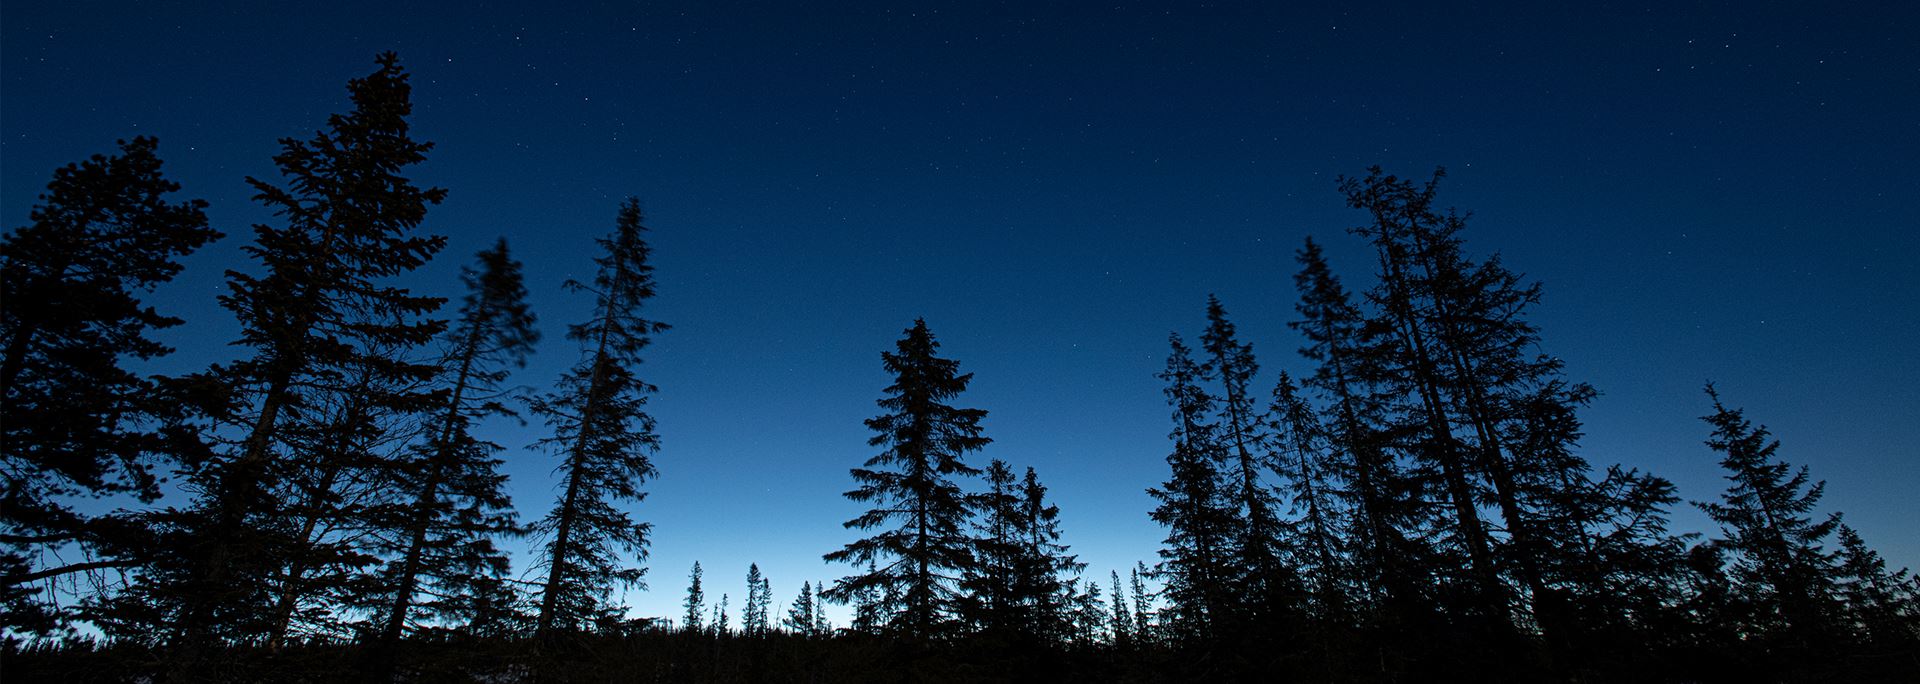 En rekke trær strekker seg mot en mørk stjernehimmel